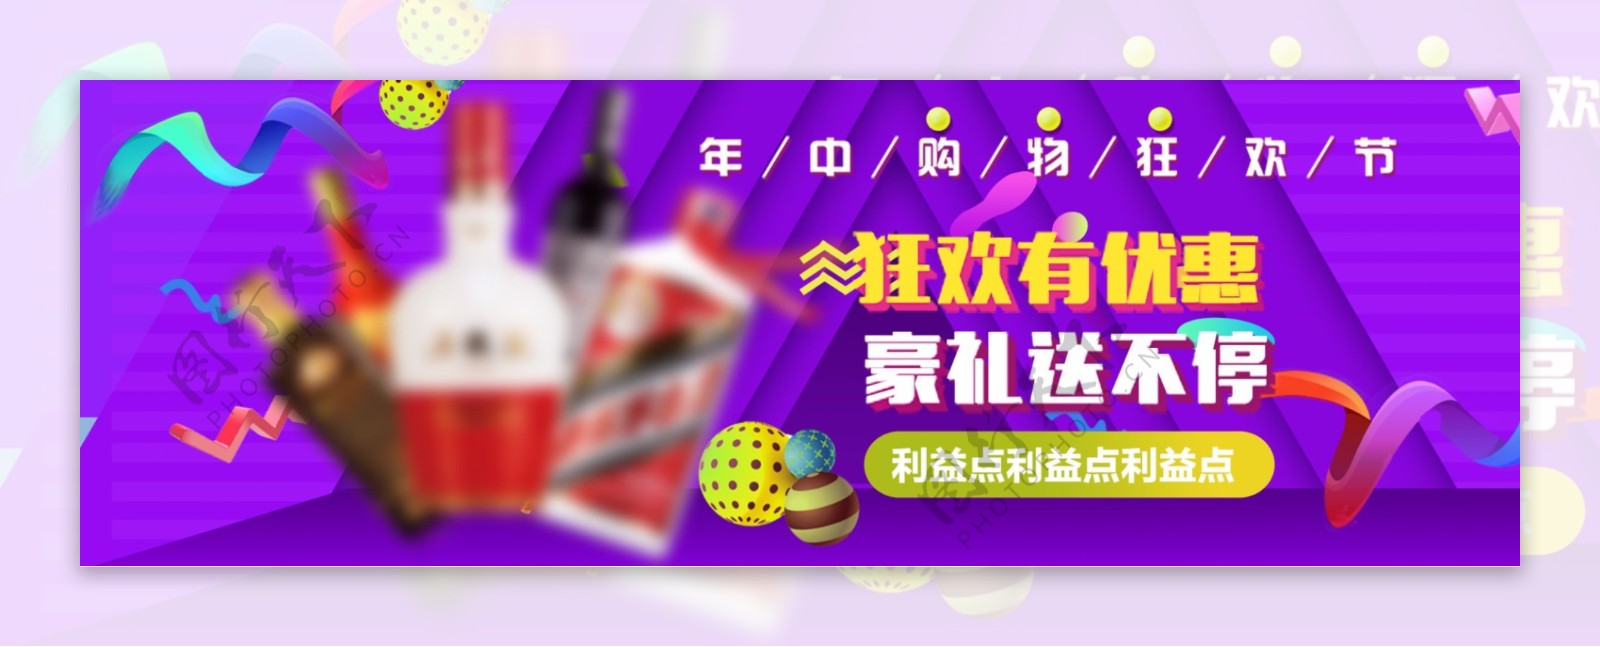 炫彩时尚双11狂欢节电商海报banner淘宝双十一